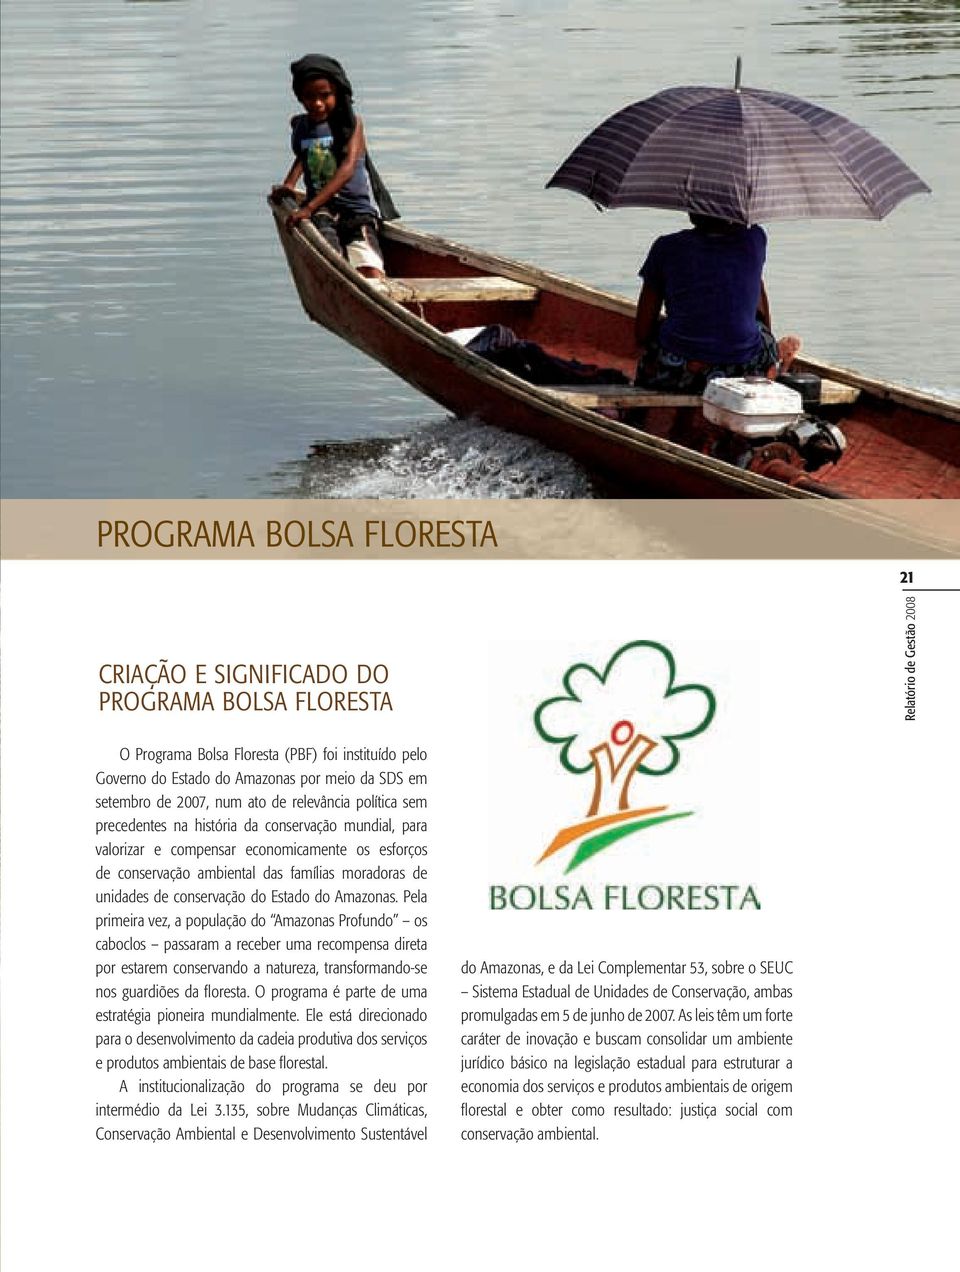 moradoras de unidades de conservação do Estado do Amazonas.